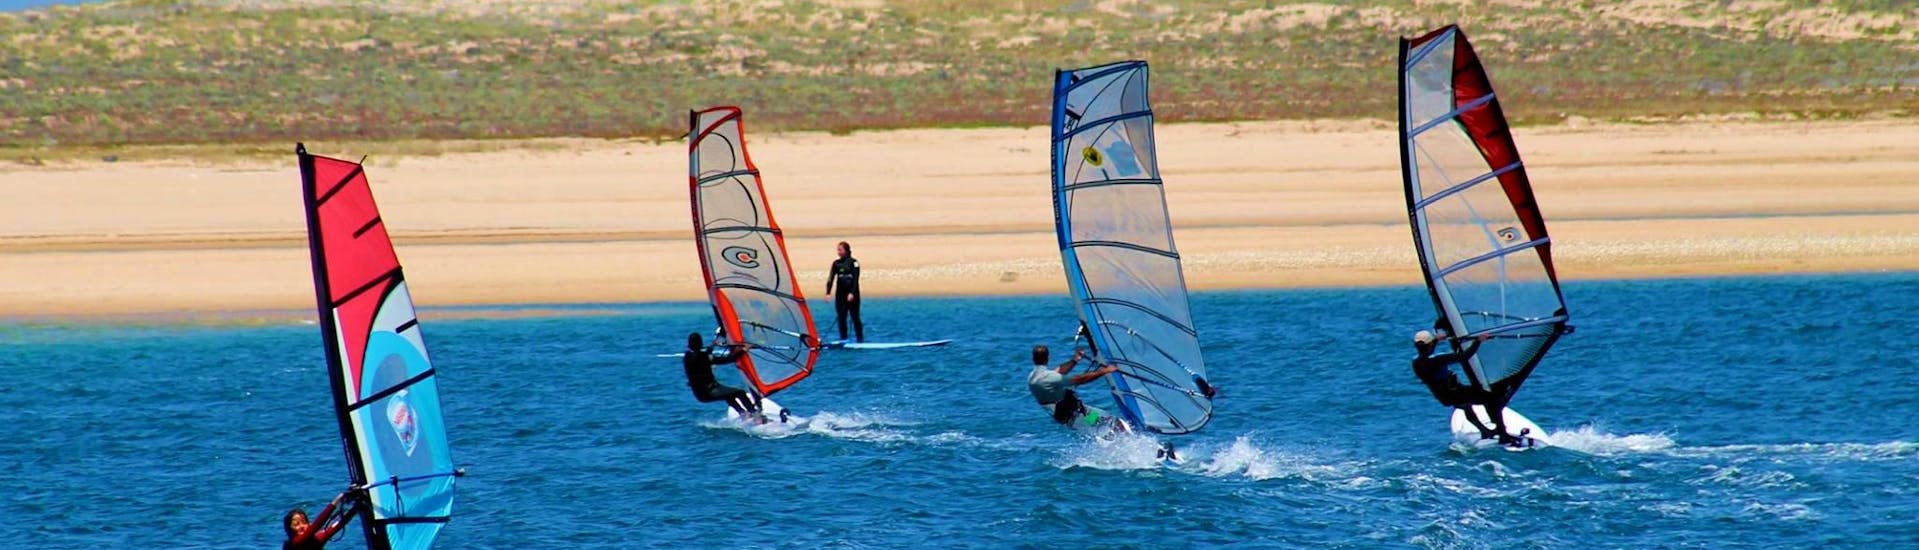 Cours privé de windsurf à Sesimbra (dès 7 ans).